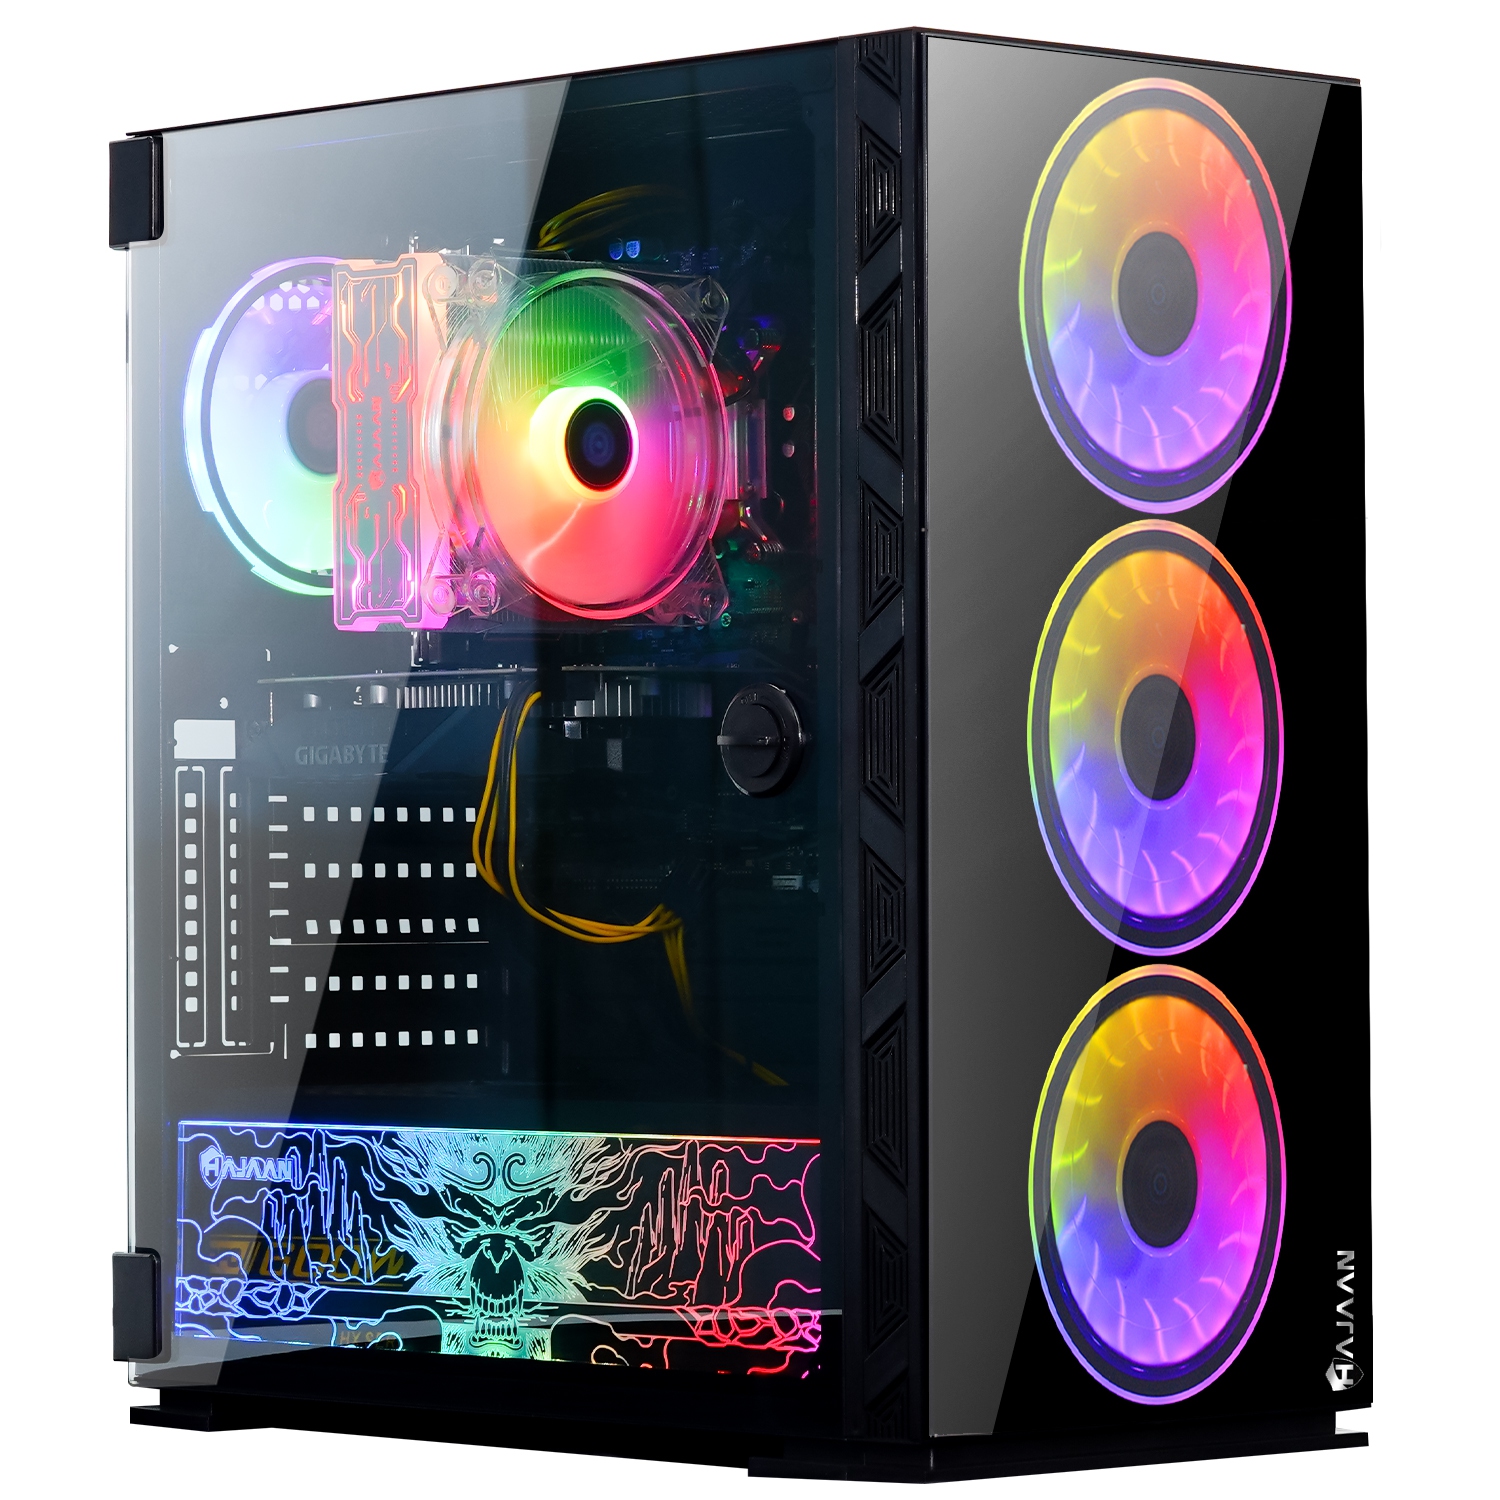 HAJAAN BREEZE PRO Gaming Desktop PC | RTX 3070 8GB GDDR6 | AMD Ryzen 7 5700X 8-Core Processor | 16GB DDR4 RAM | 512GB SSD | Windows 11 Pro | Black